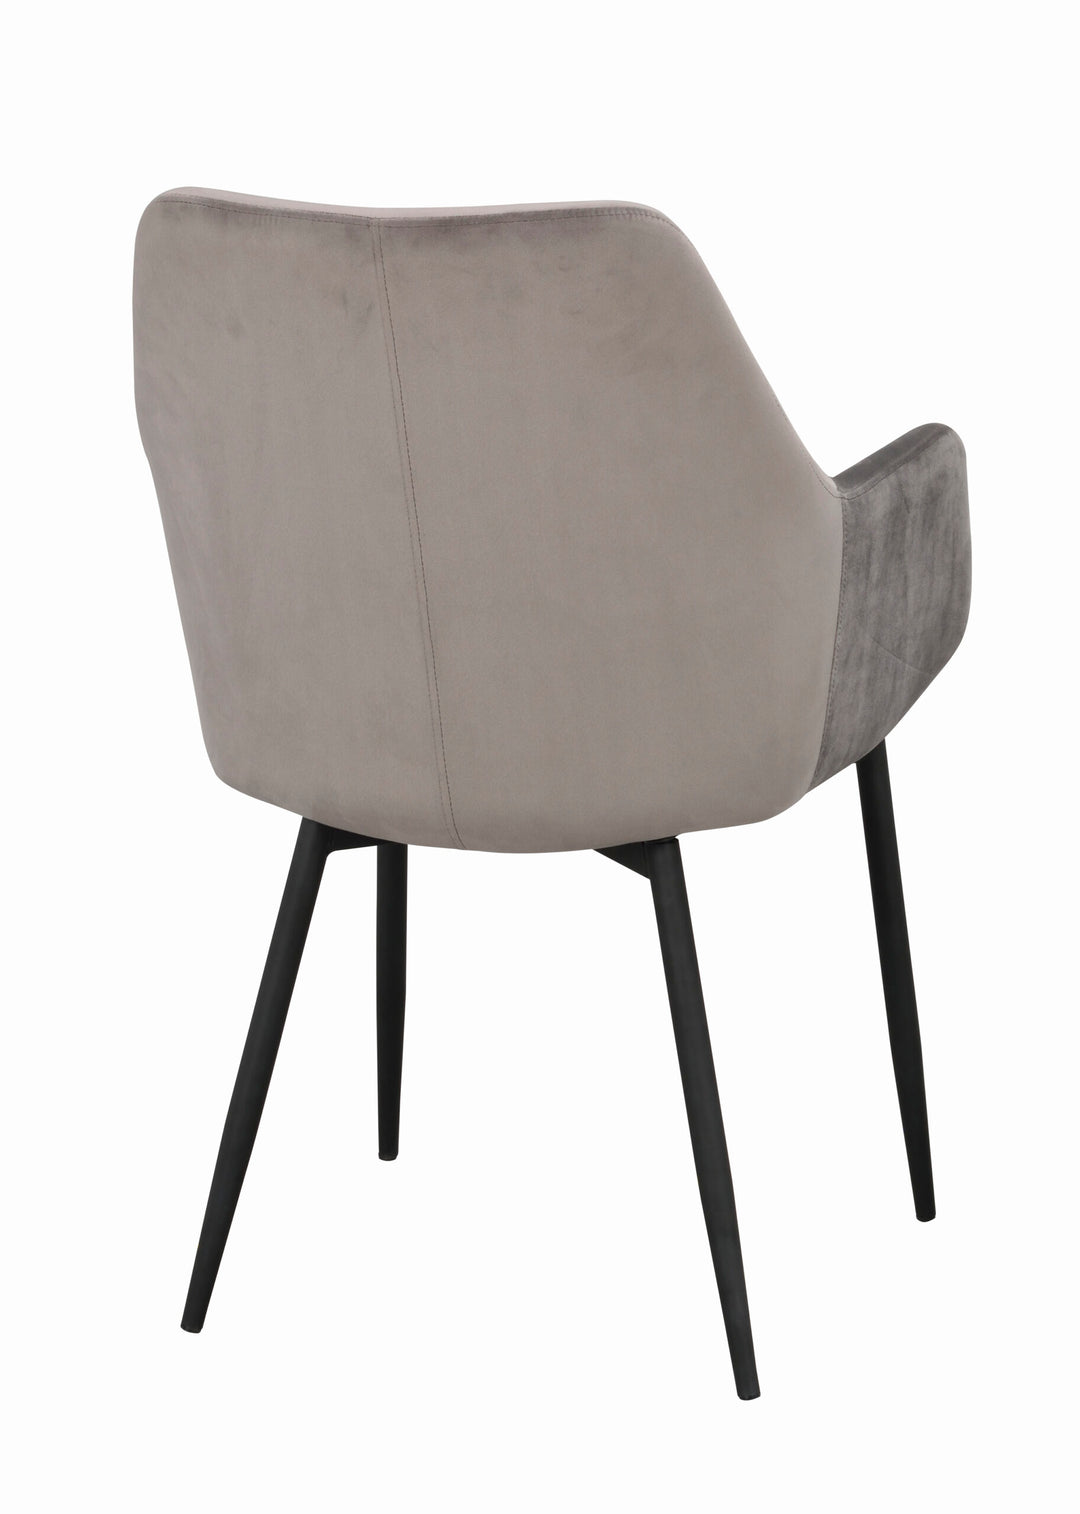 110456_d, Reily stol, grå sammet_svart R